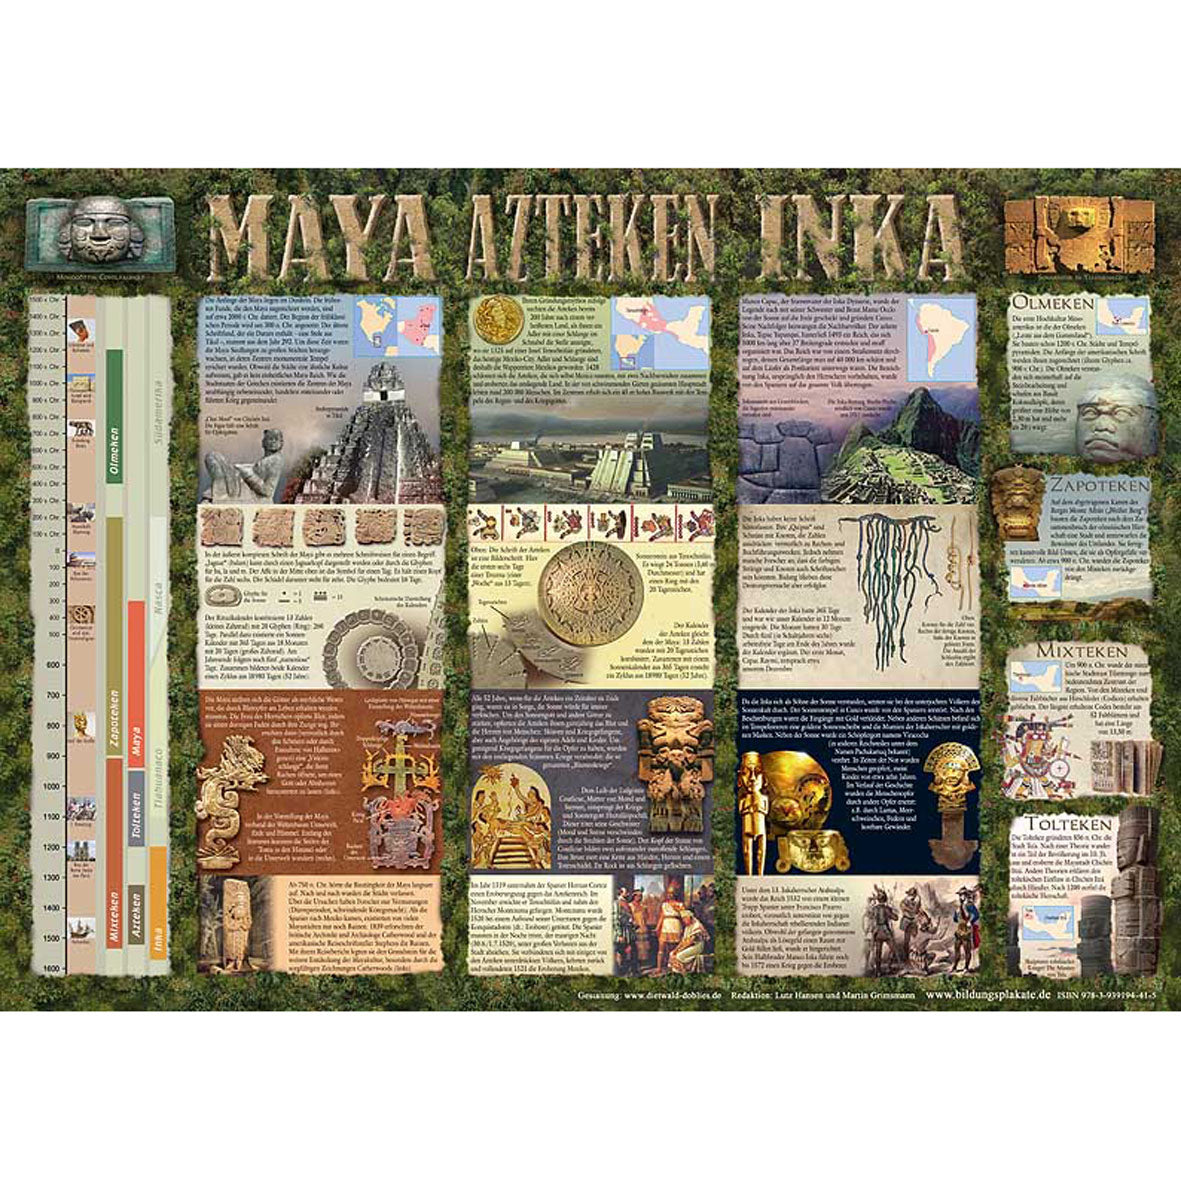 Poster "MAYA, AZTEKEN, INKA"